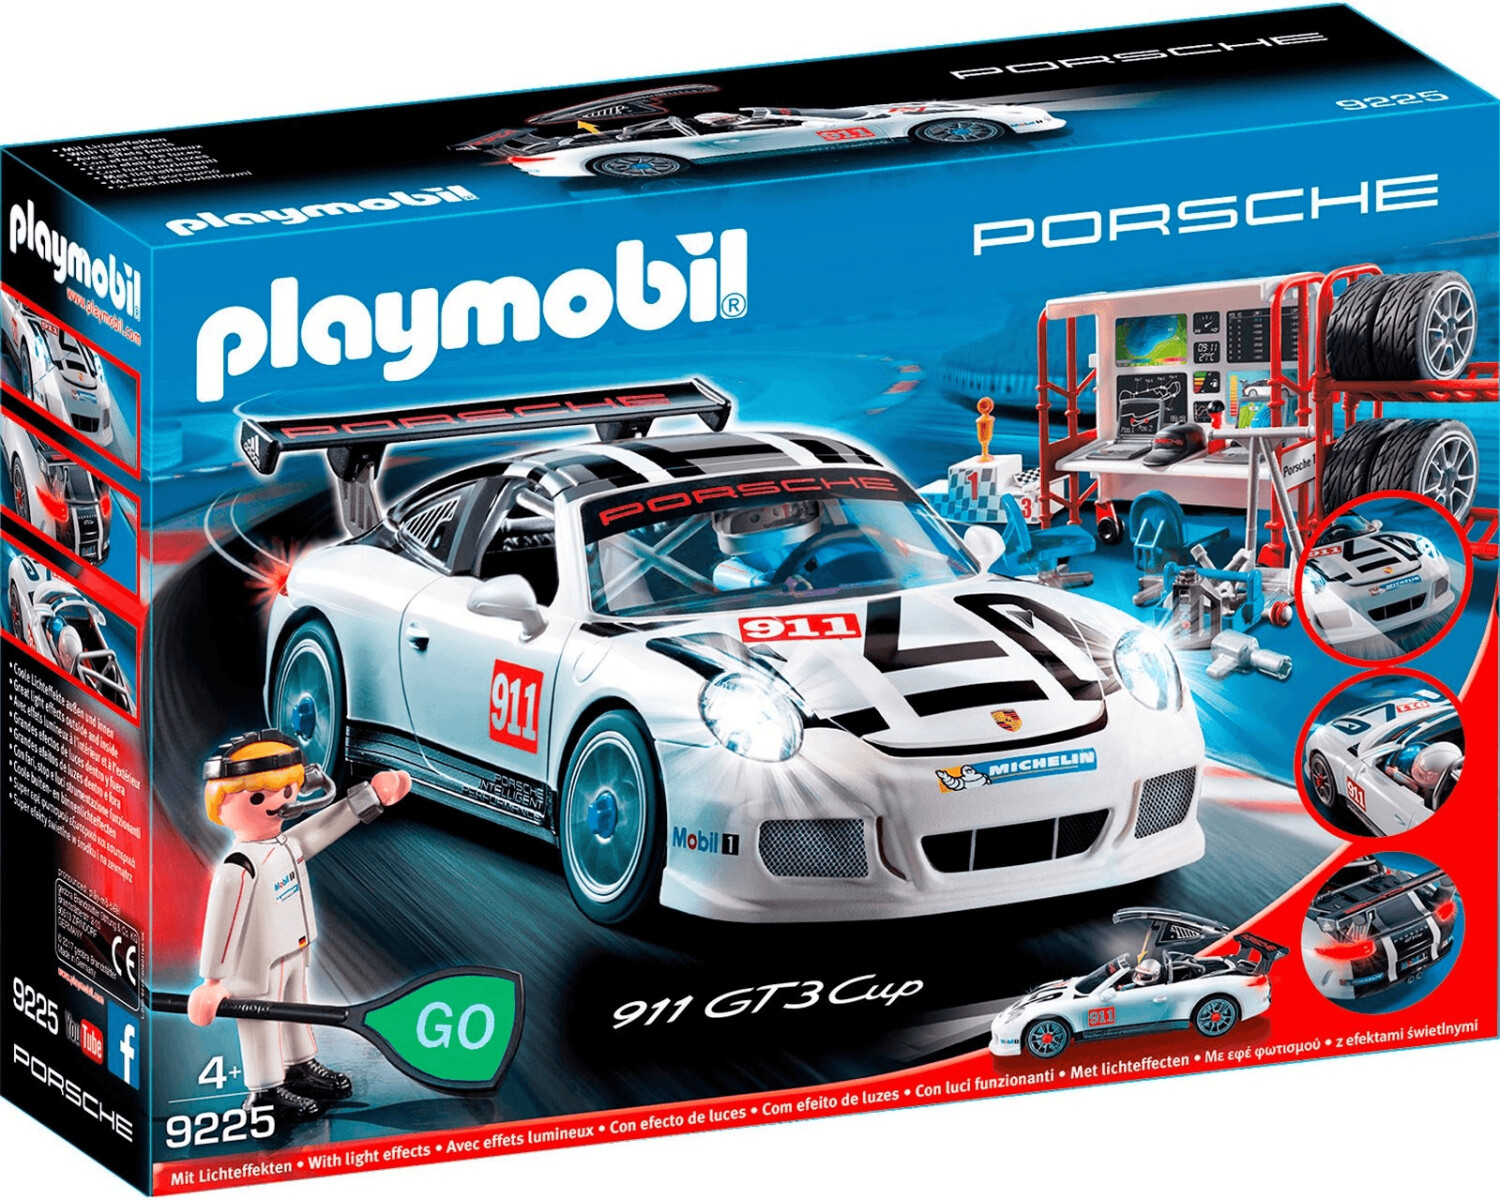 Playmobil Porsche 911 GT3 Cup (9225)